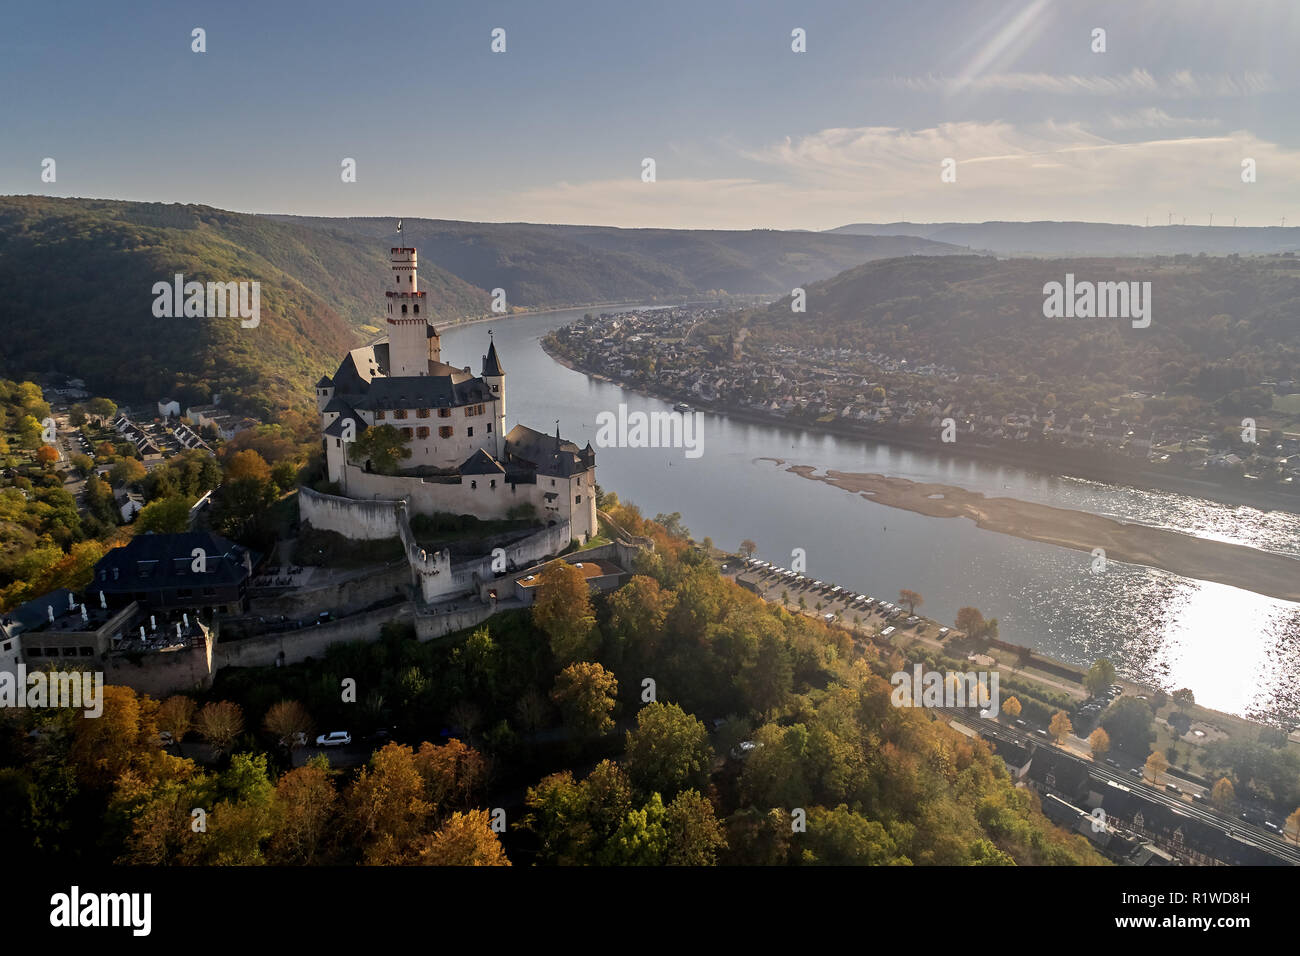 Dans le Marksburg du patrimoine culturel mondial de l'UNESCO de la vallée du Haut-Rhin moyen haut au-dessus du Rhin près de Kobern-gondorf, drone abattu Banque D'Images